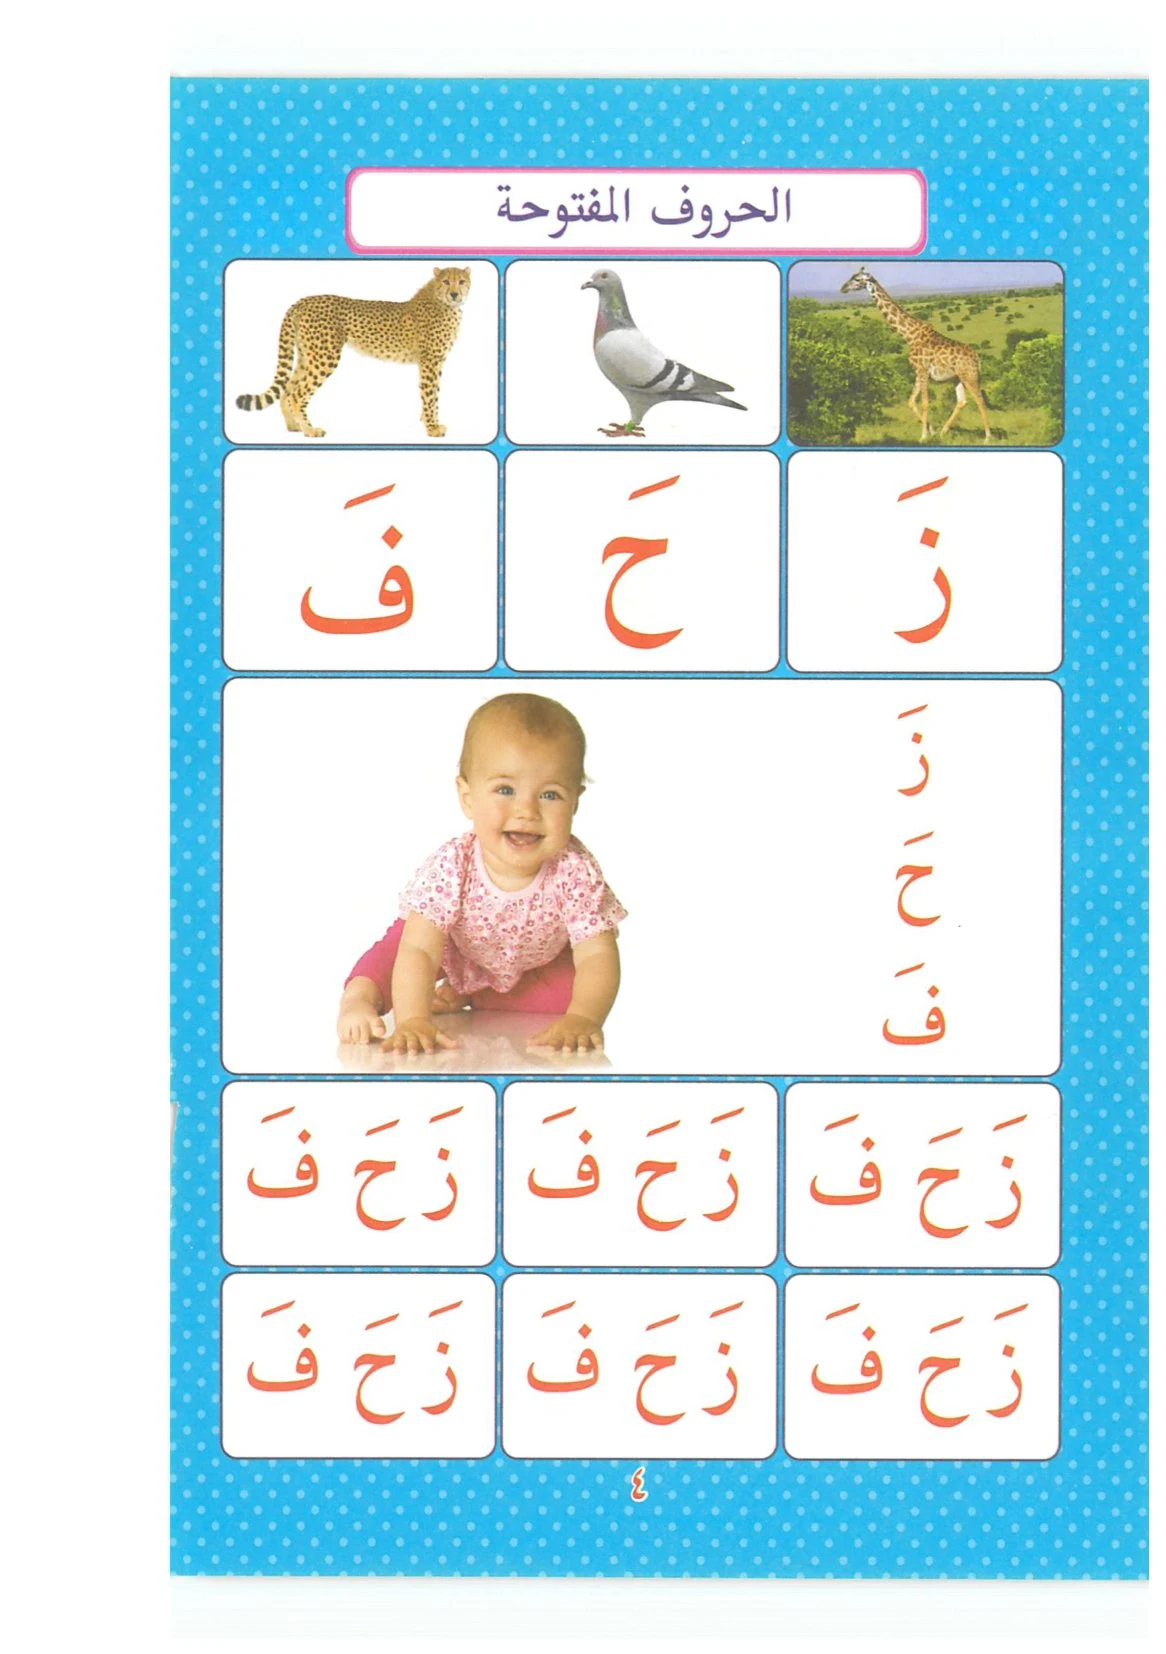 تحميل كتاب القراءة المصورة للاطفال PDF